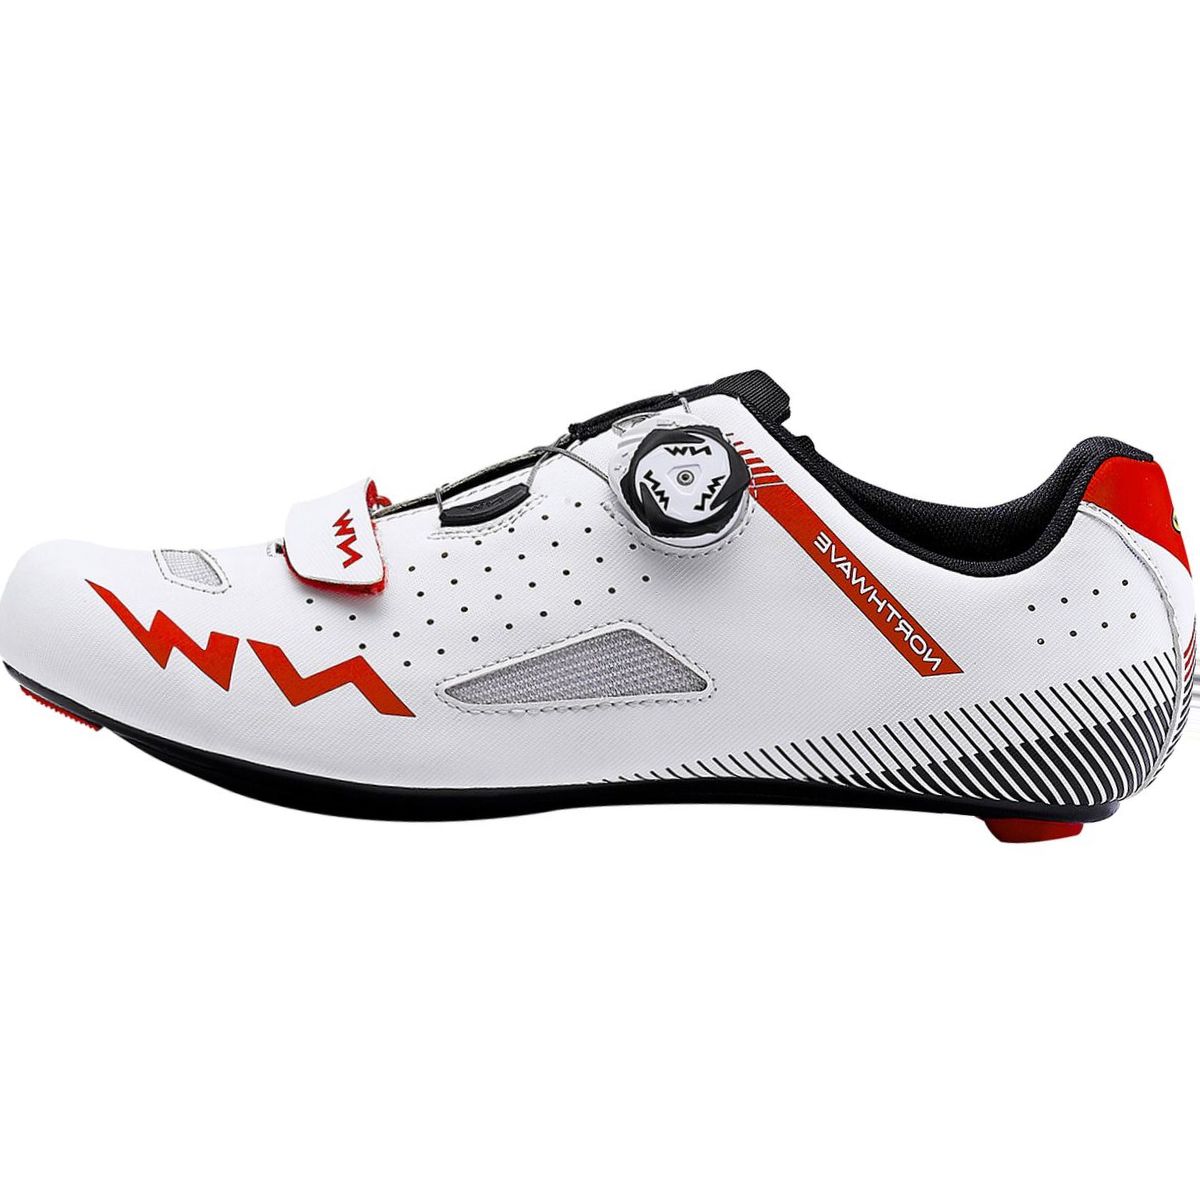 Northwave Core Plus Cycling Shoe - Men's